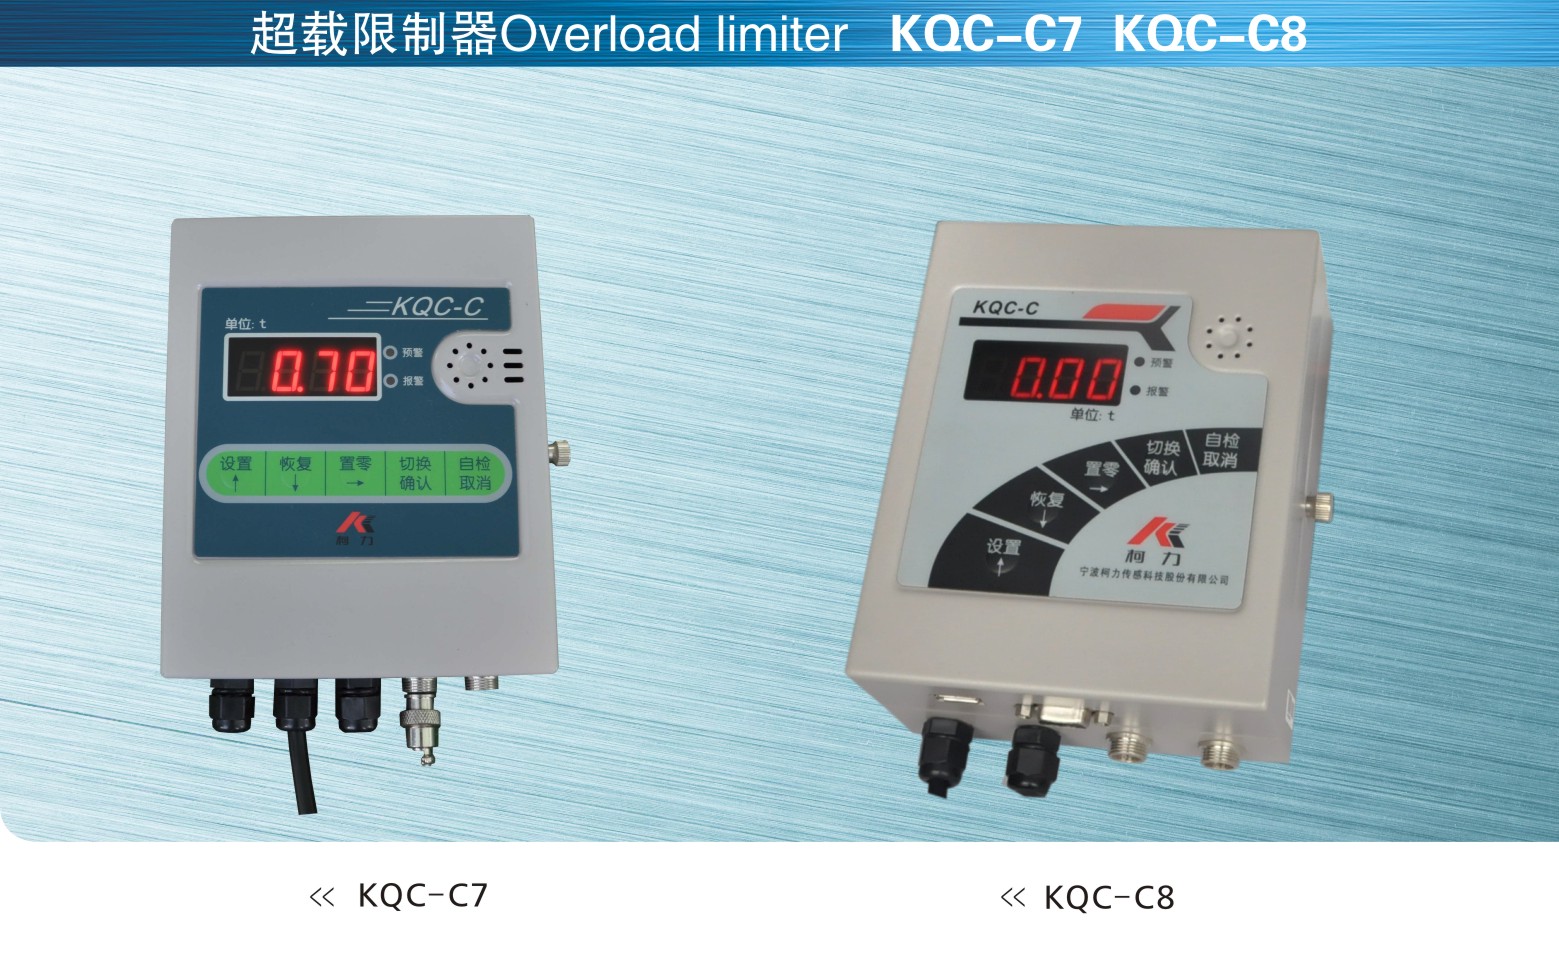 英国OAP KQC-C7和KQC-C8超载限制器